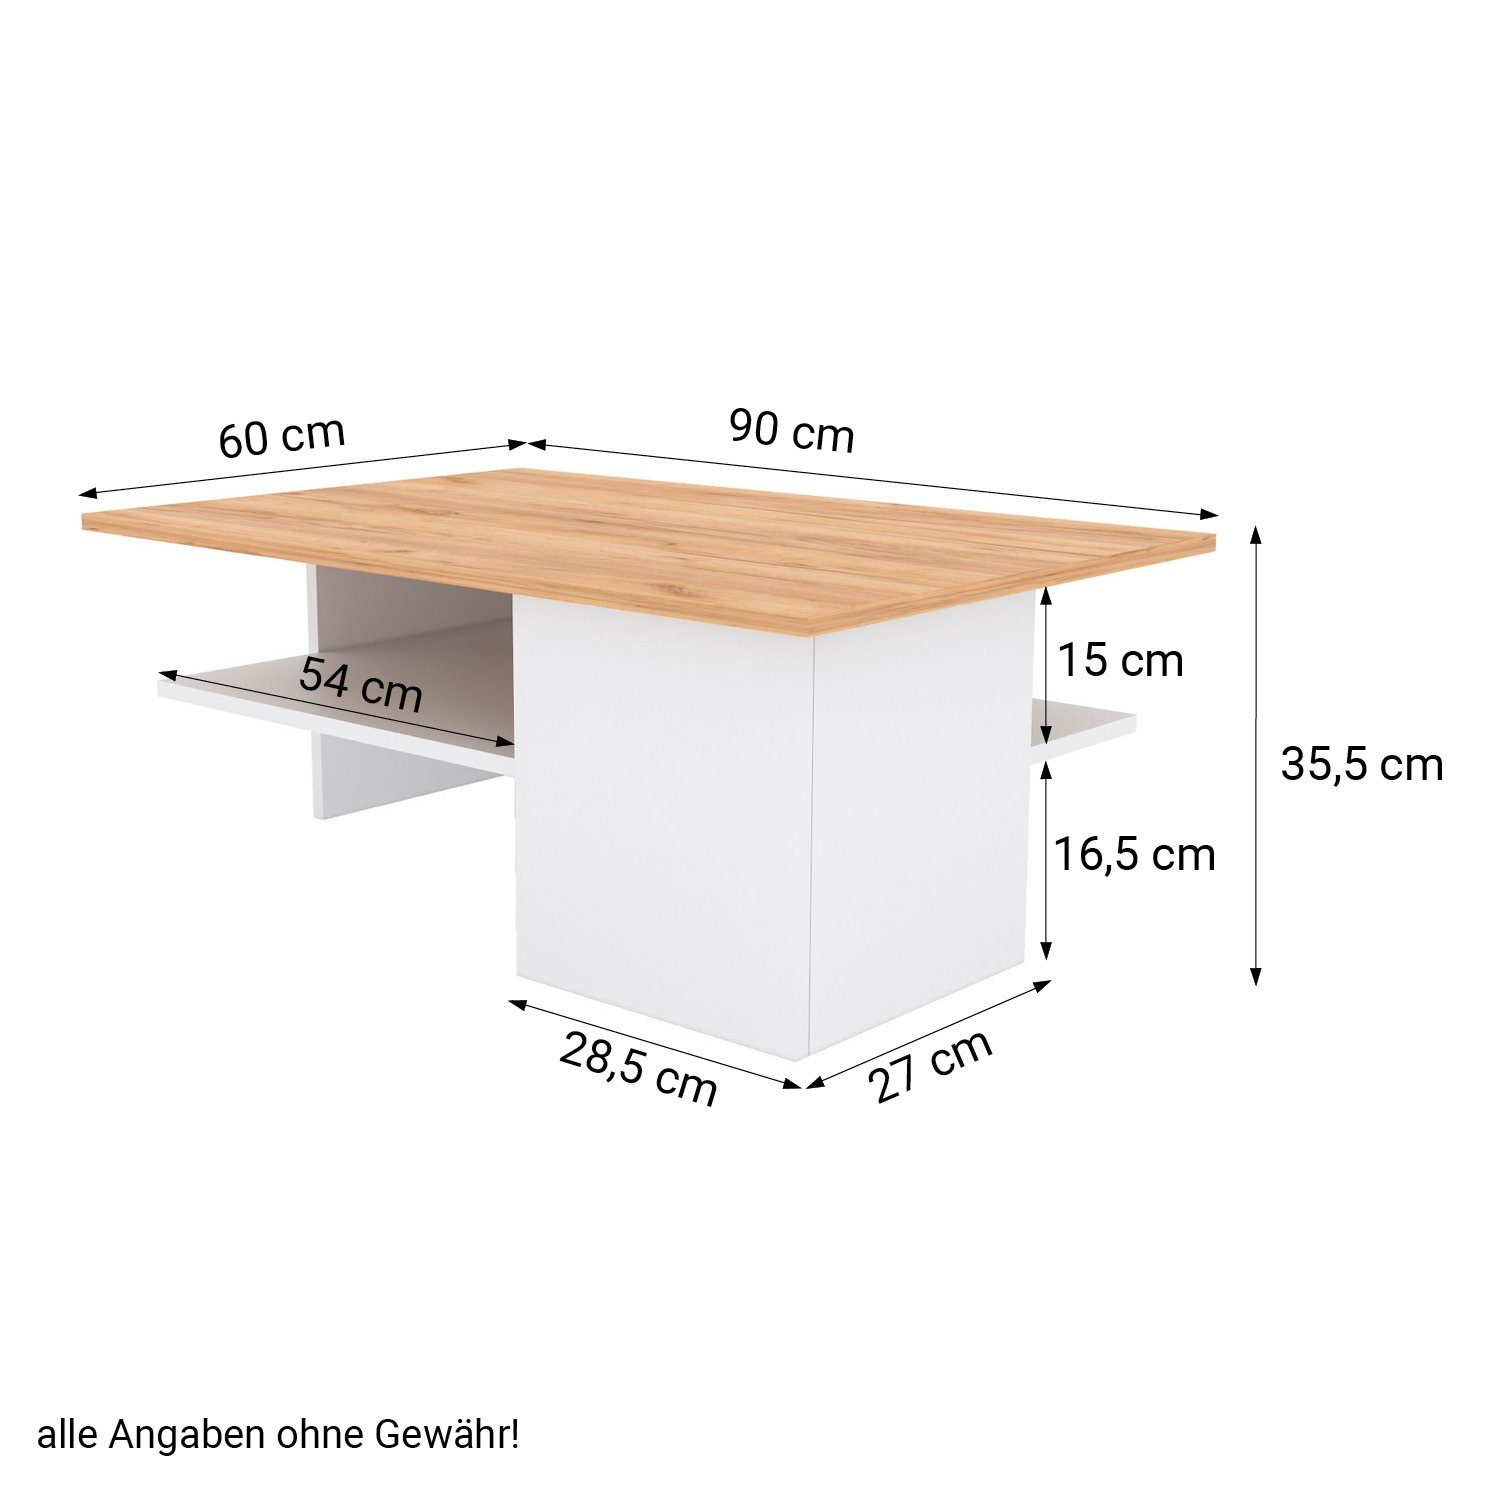 Beton Couchtisch Wohnzimmertisch Sofatisch Holz Natur Set) Homestyle4u (kein Tisch